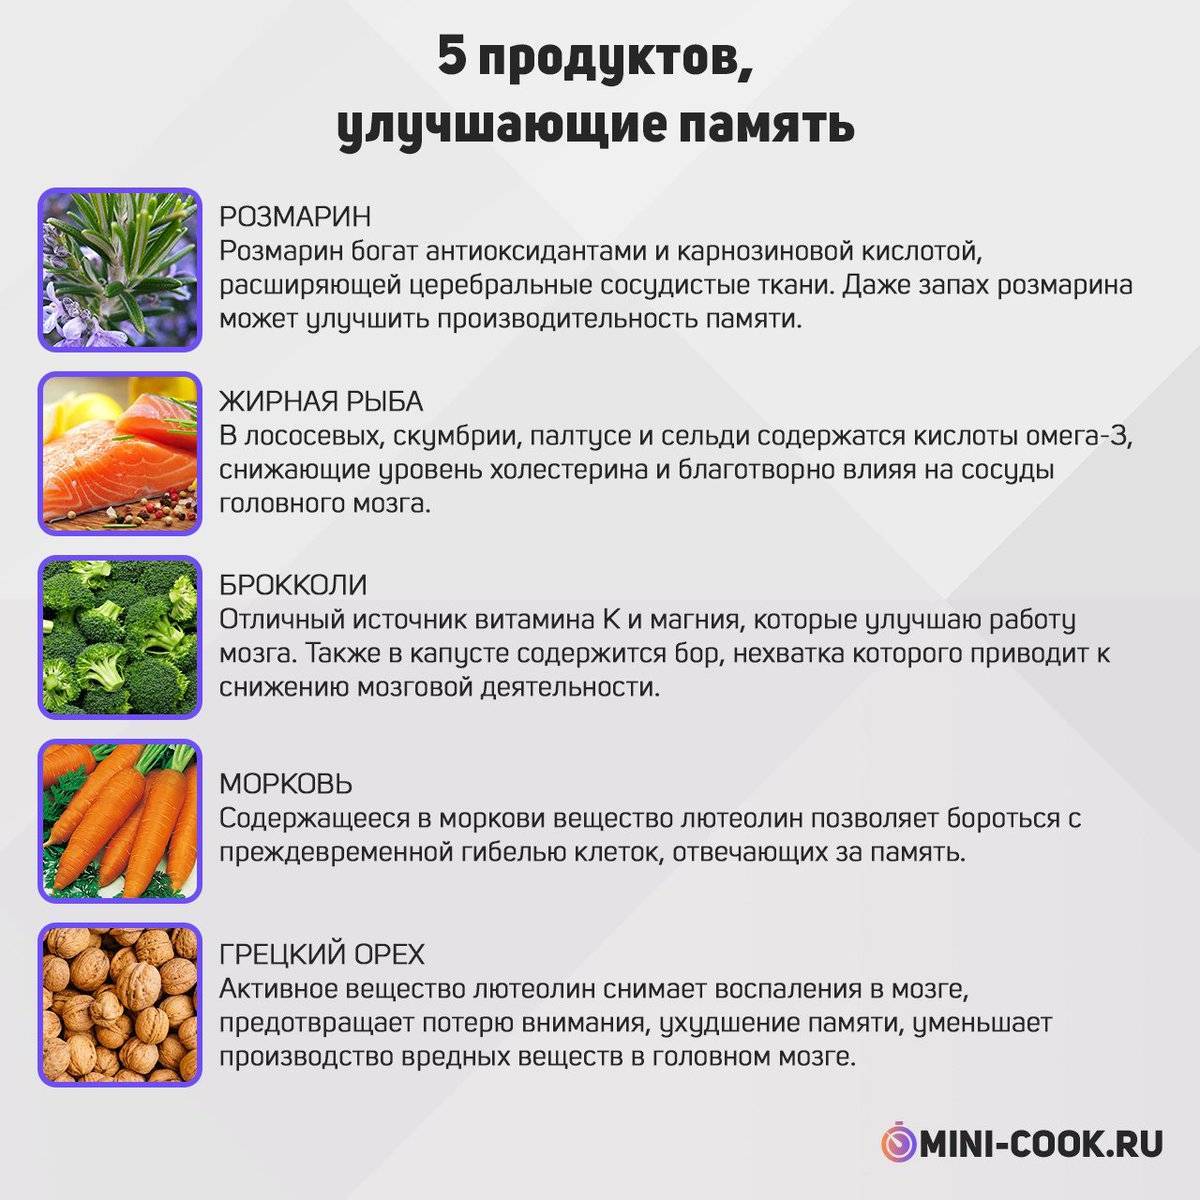 17 продуктов, полезных для мозга и памяти: список продуктов для улучшения работы мозга | kadrof.ru